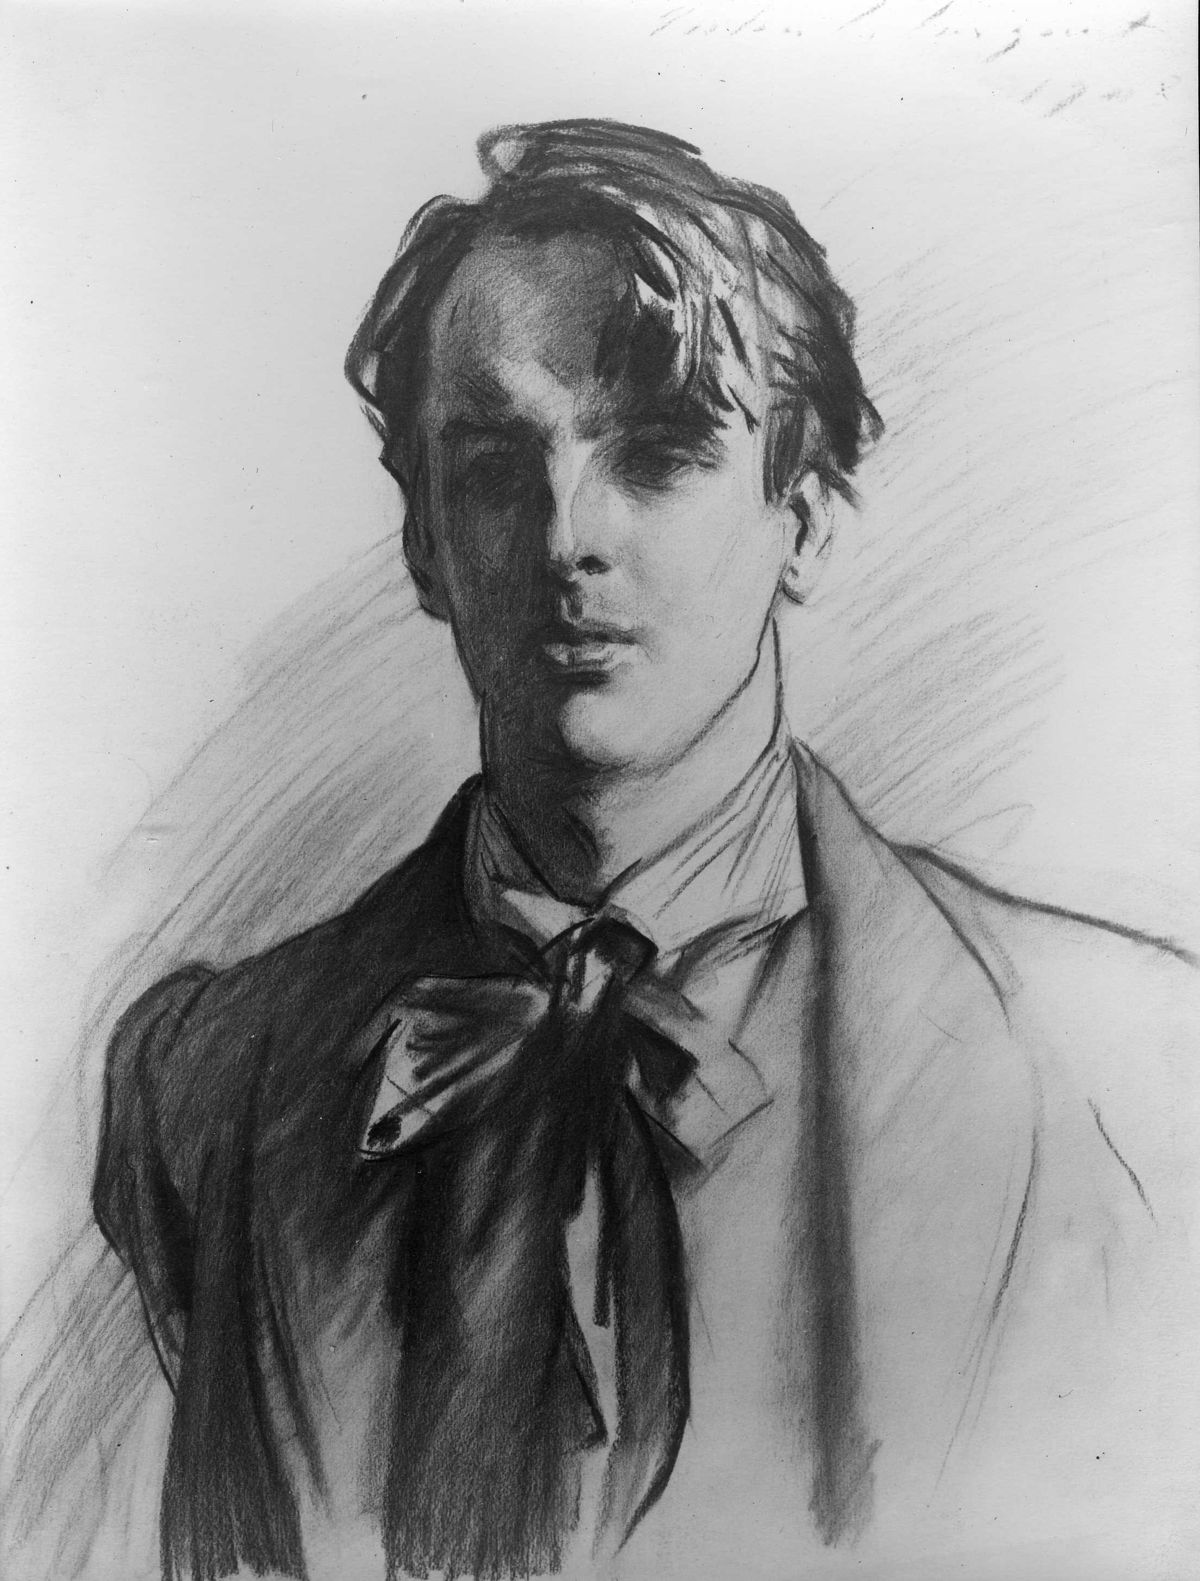 विलियम बटलर येट्स by John Singer Sargent - 1907 - 62.2 × 47 सेमी 